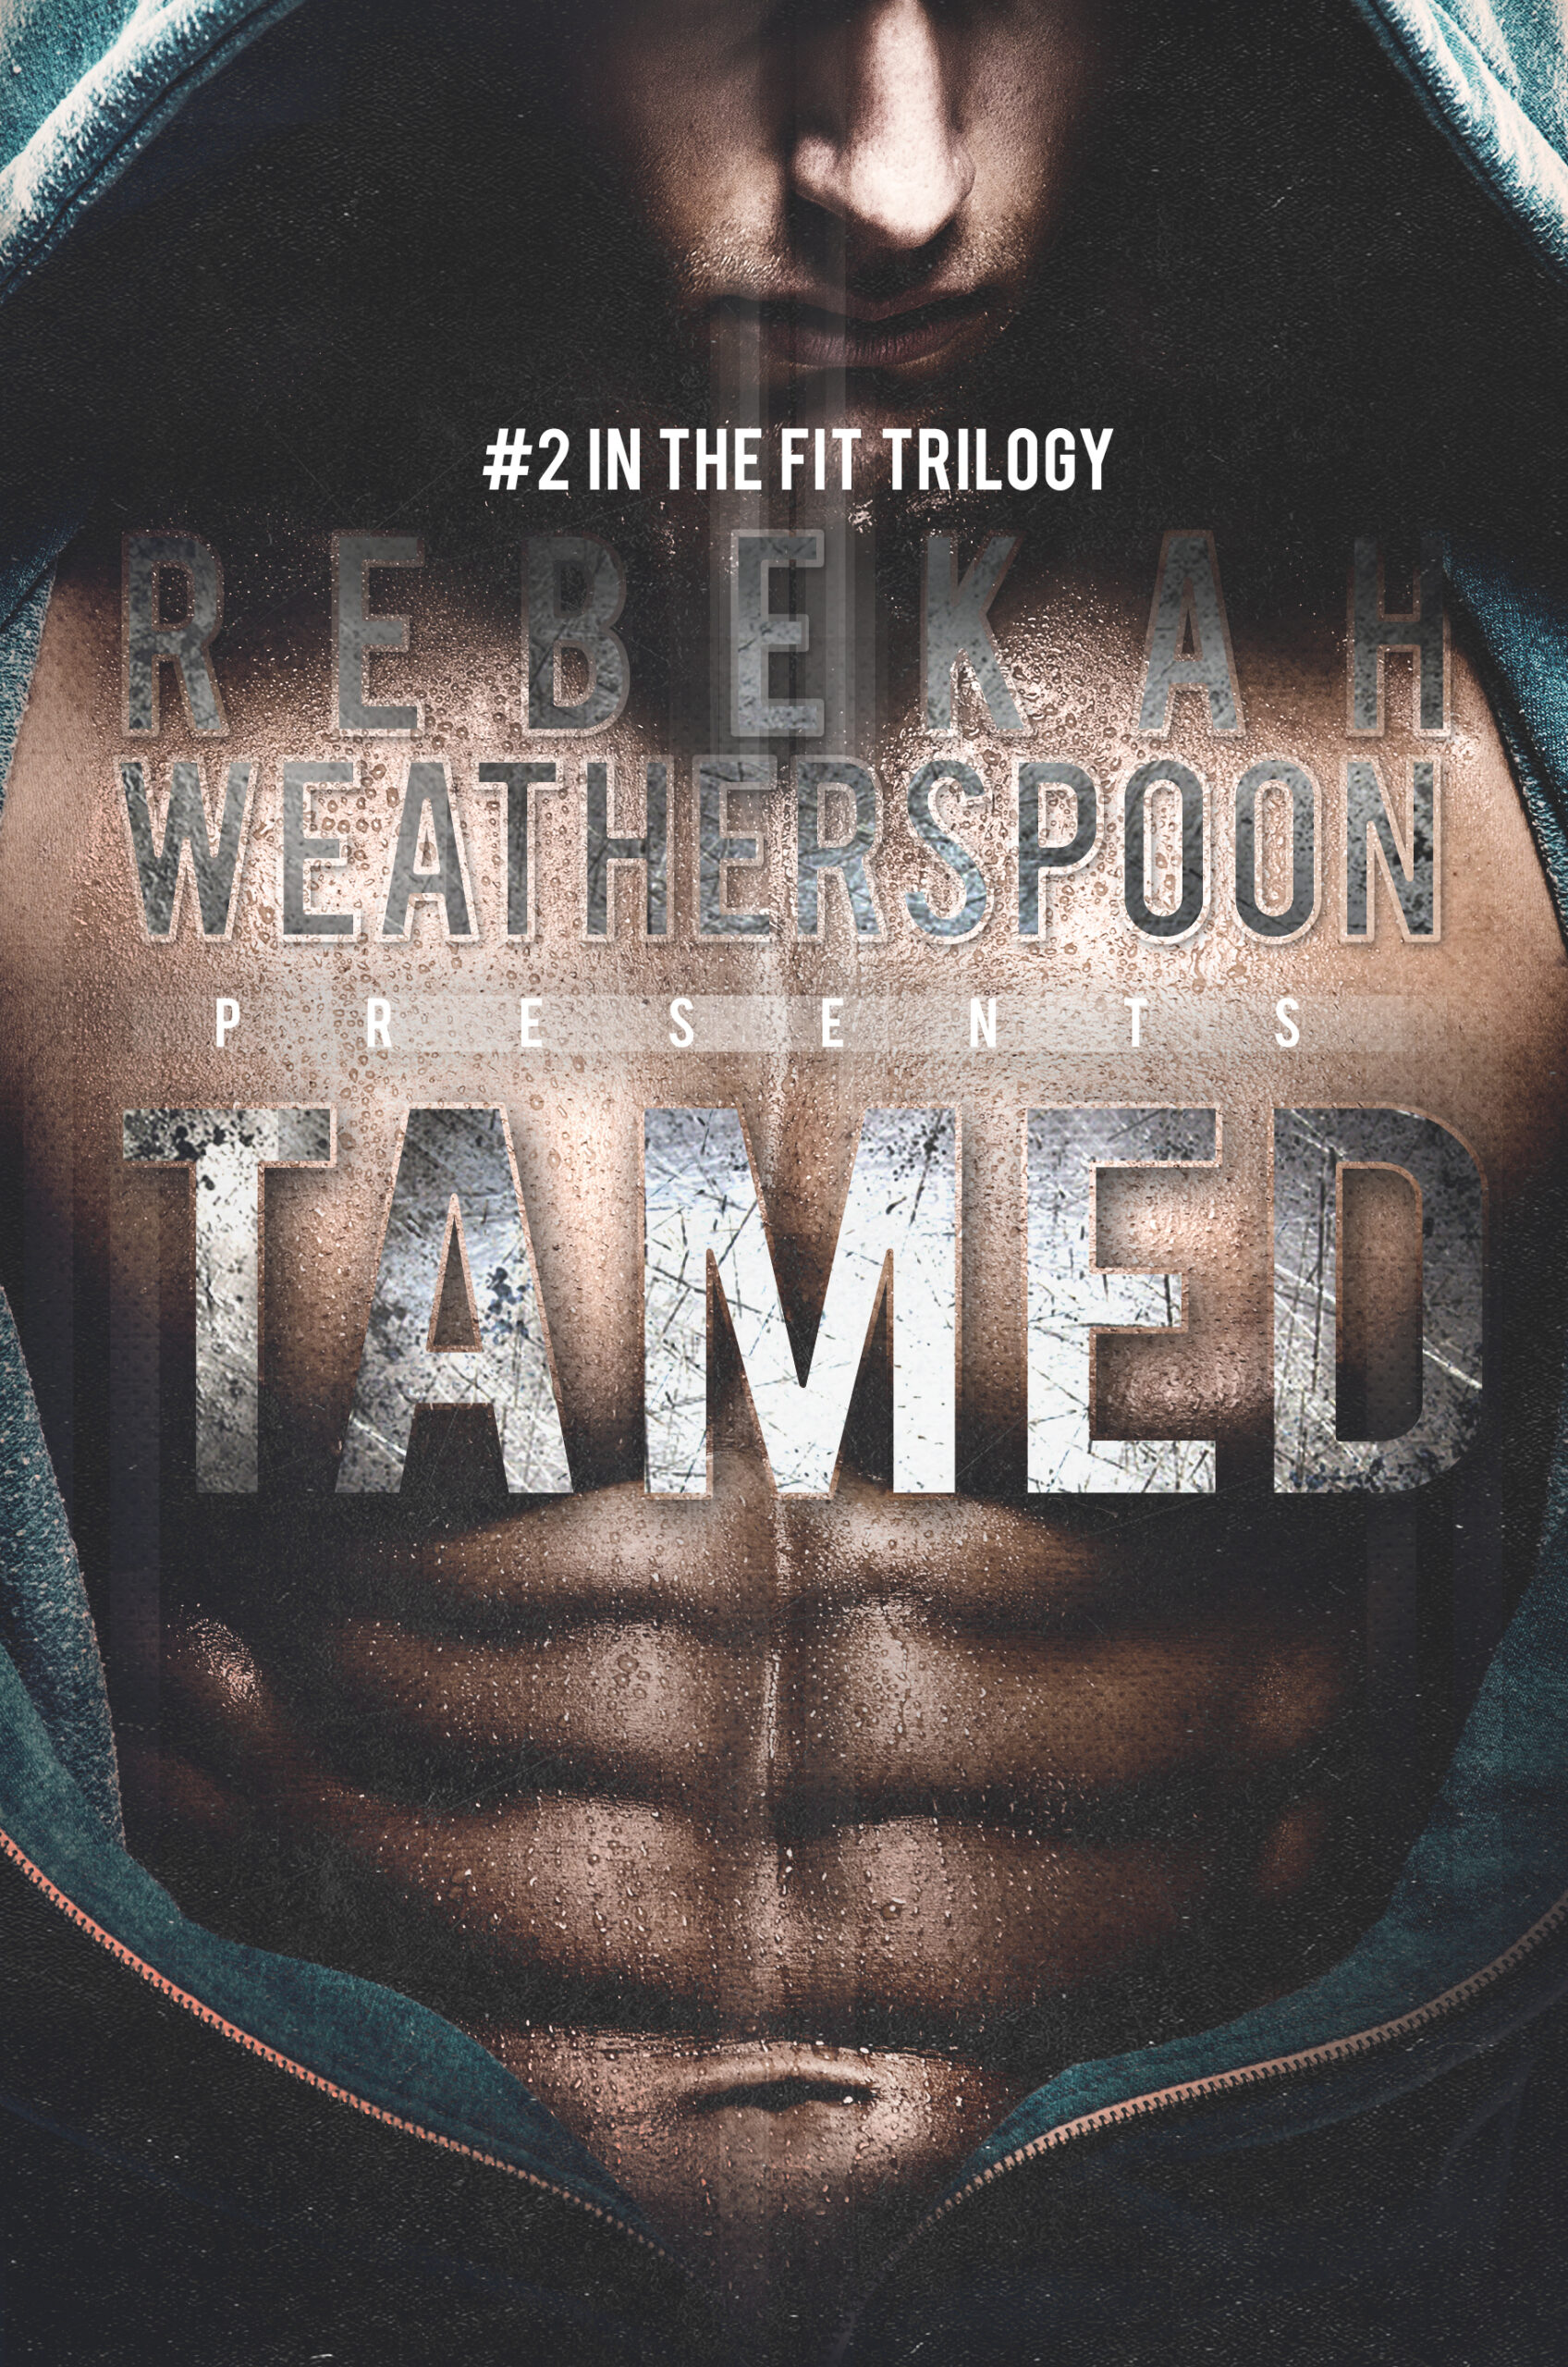 Tamed by Rebekah Weatherspoon